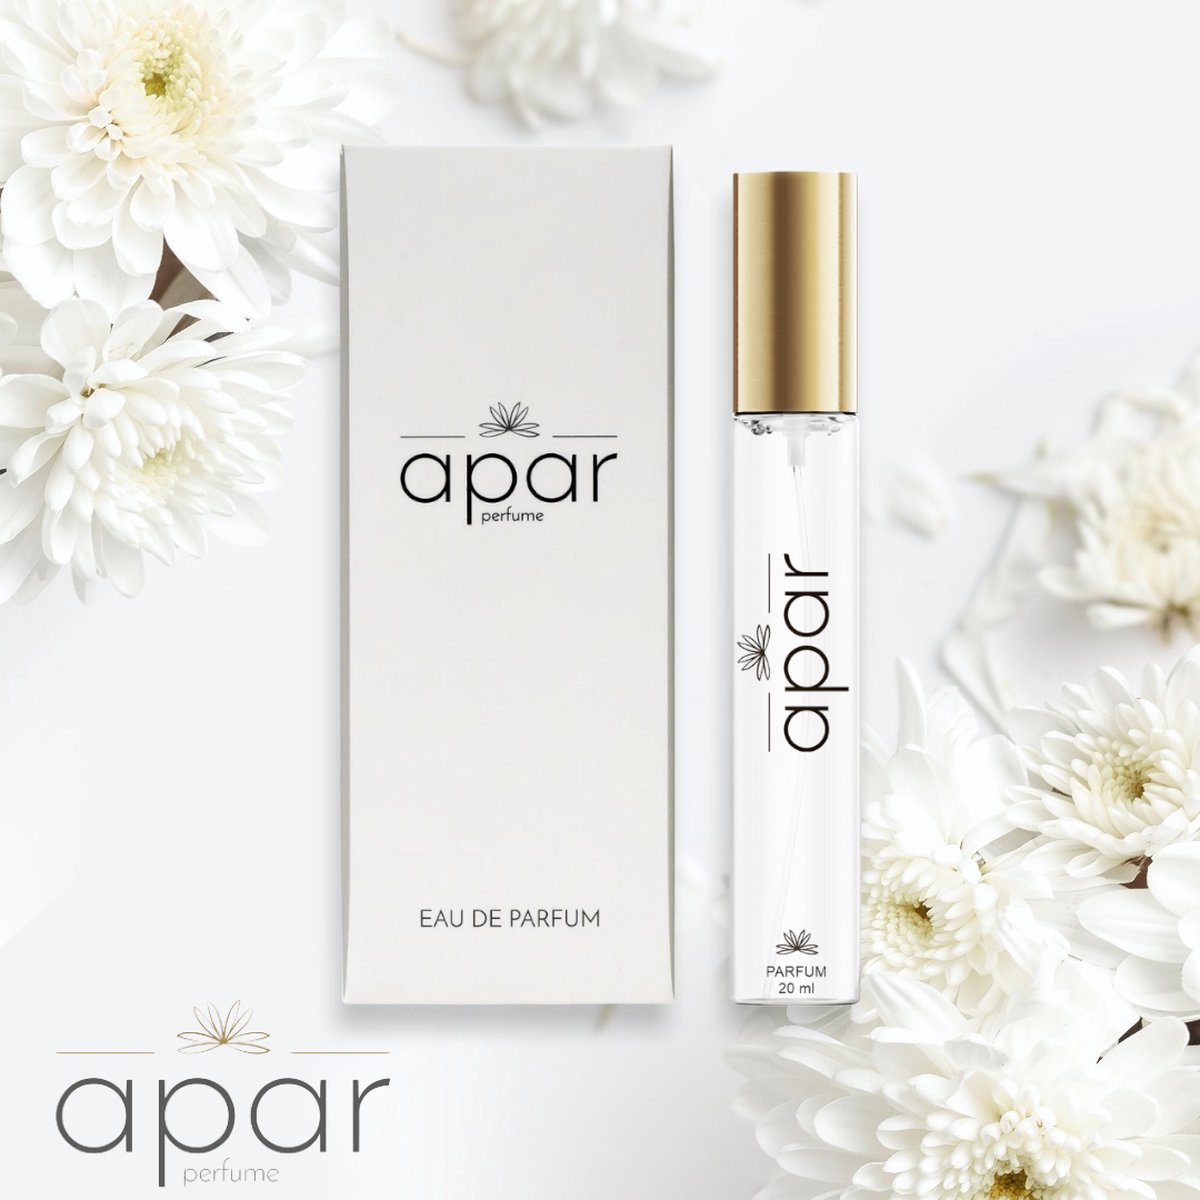 ❤Dure merk geuren voor een eerlijke prijs❤APAR Parfum EDP - 20ml - Nummer F168 Standard -